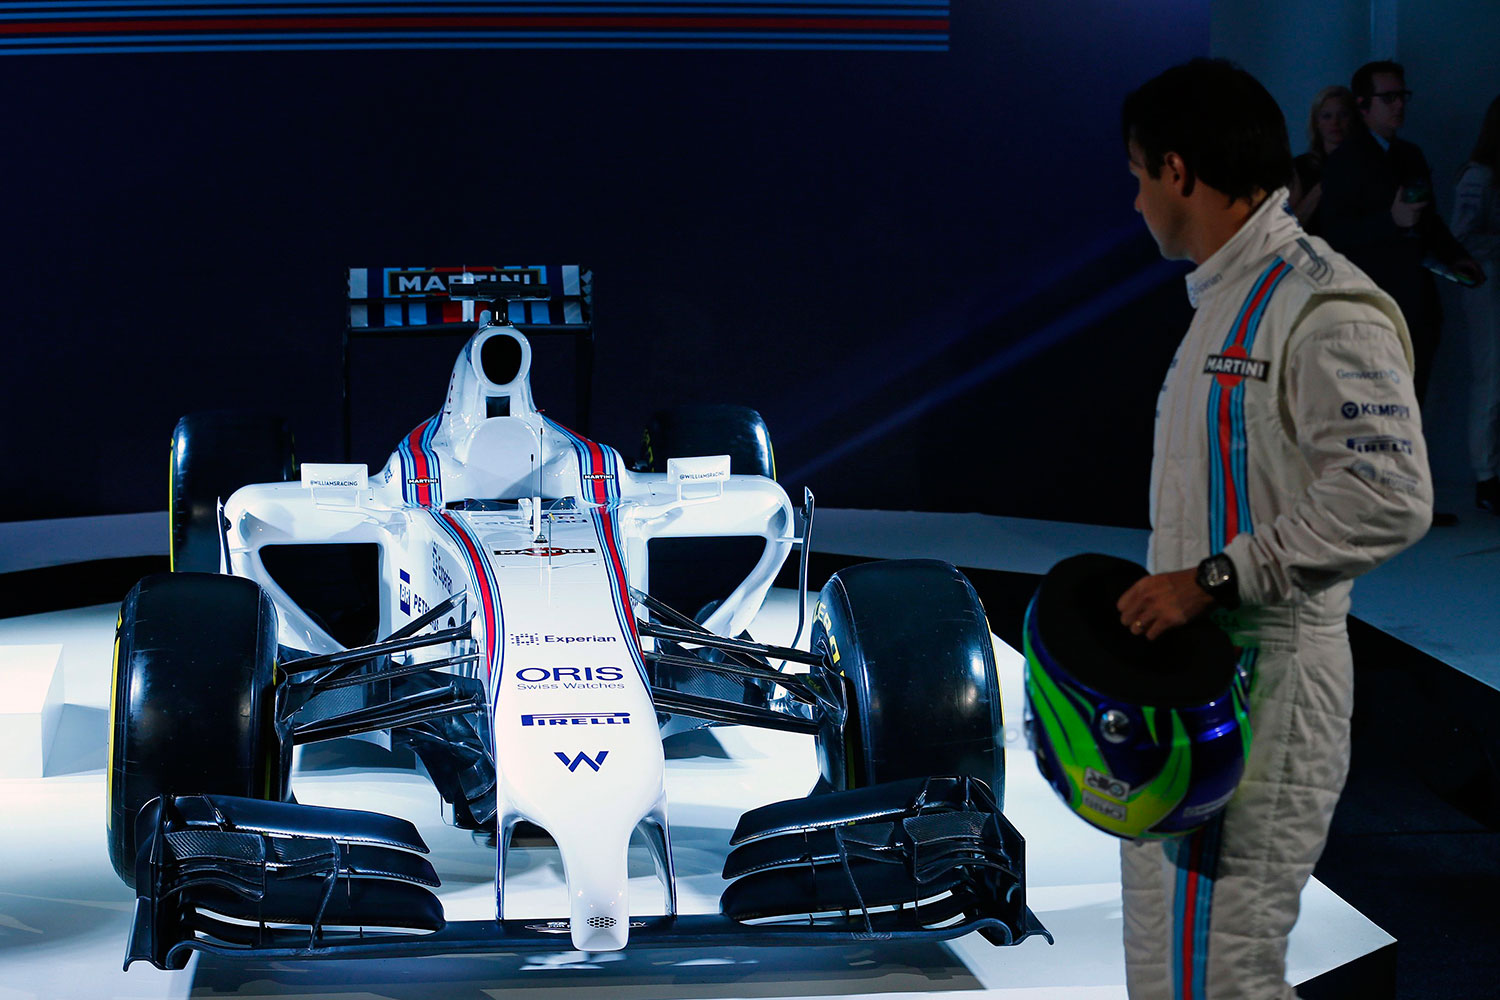 Martini patrocinador de Williams en Formula 1